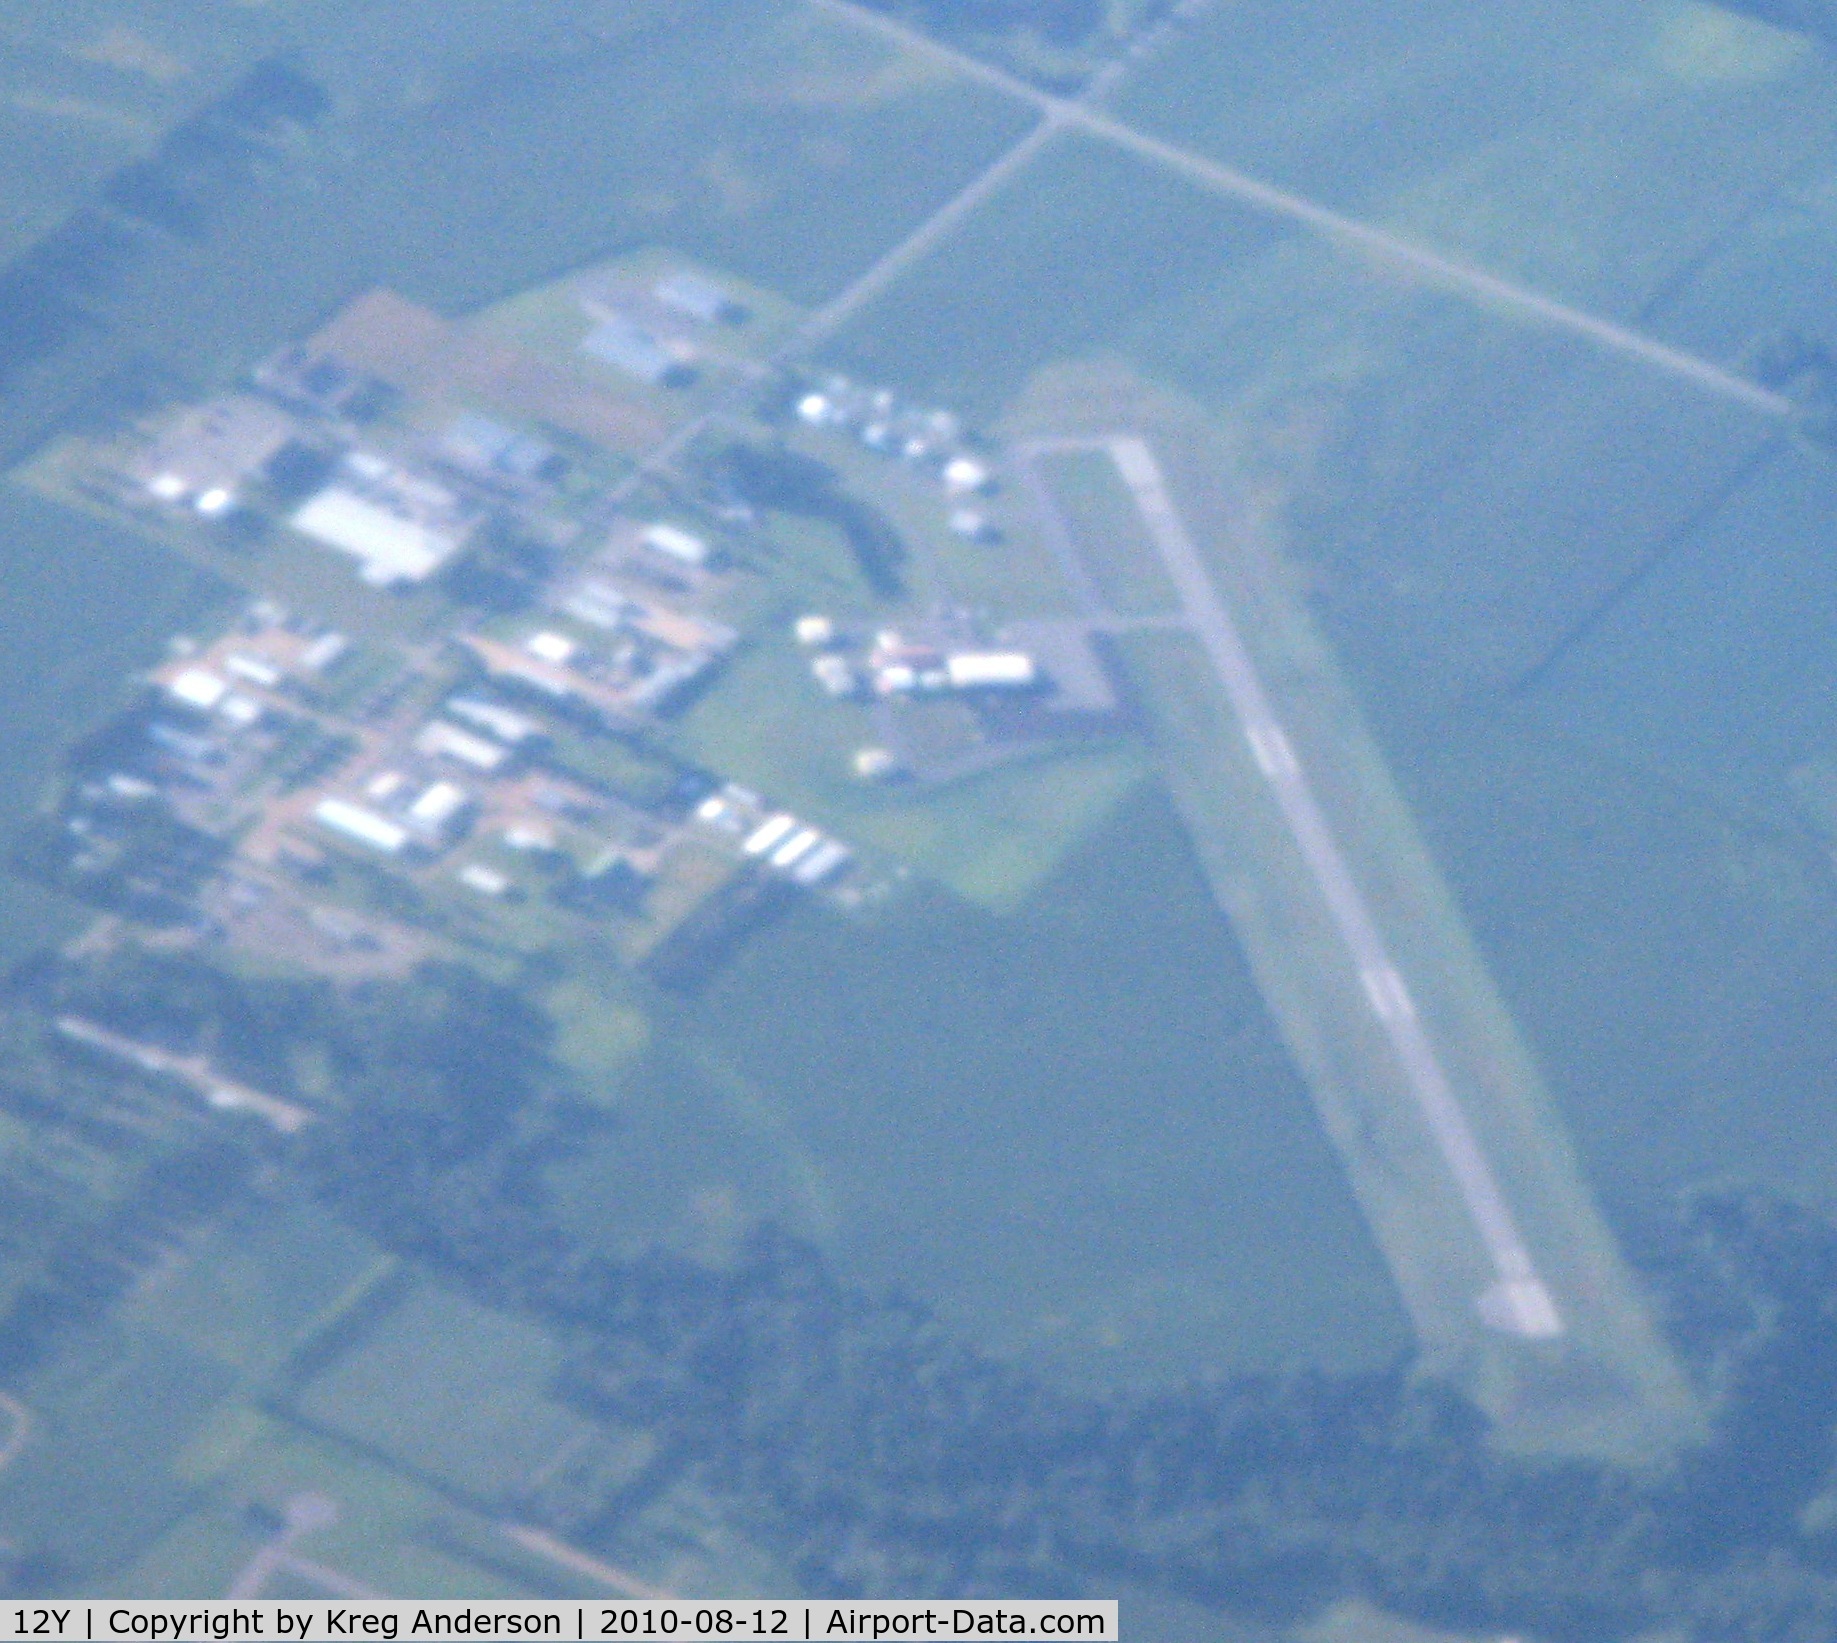 Le Sueur Municipal Airport (12Y) - Le Sueur Municipal Airport